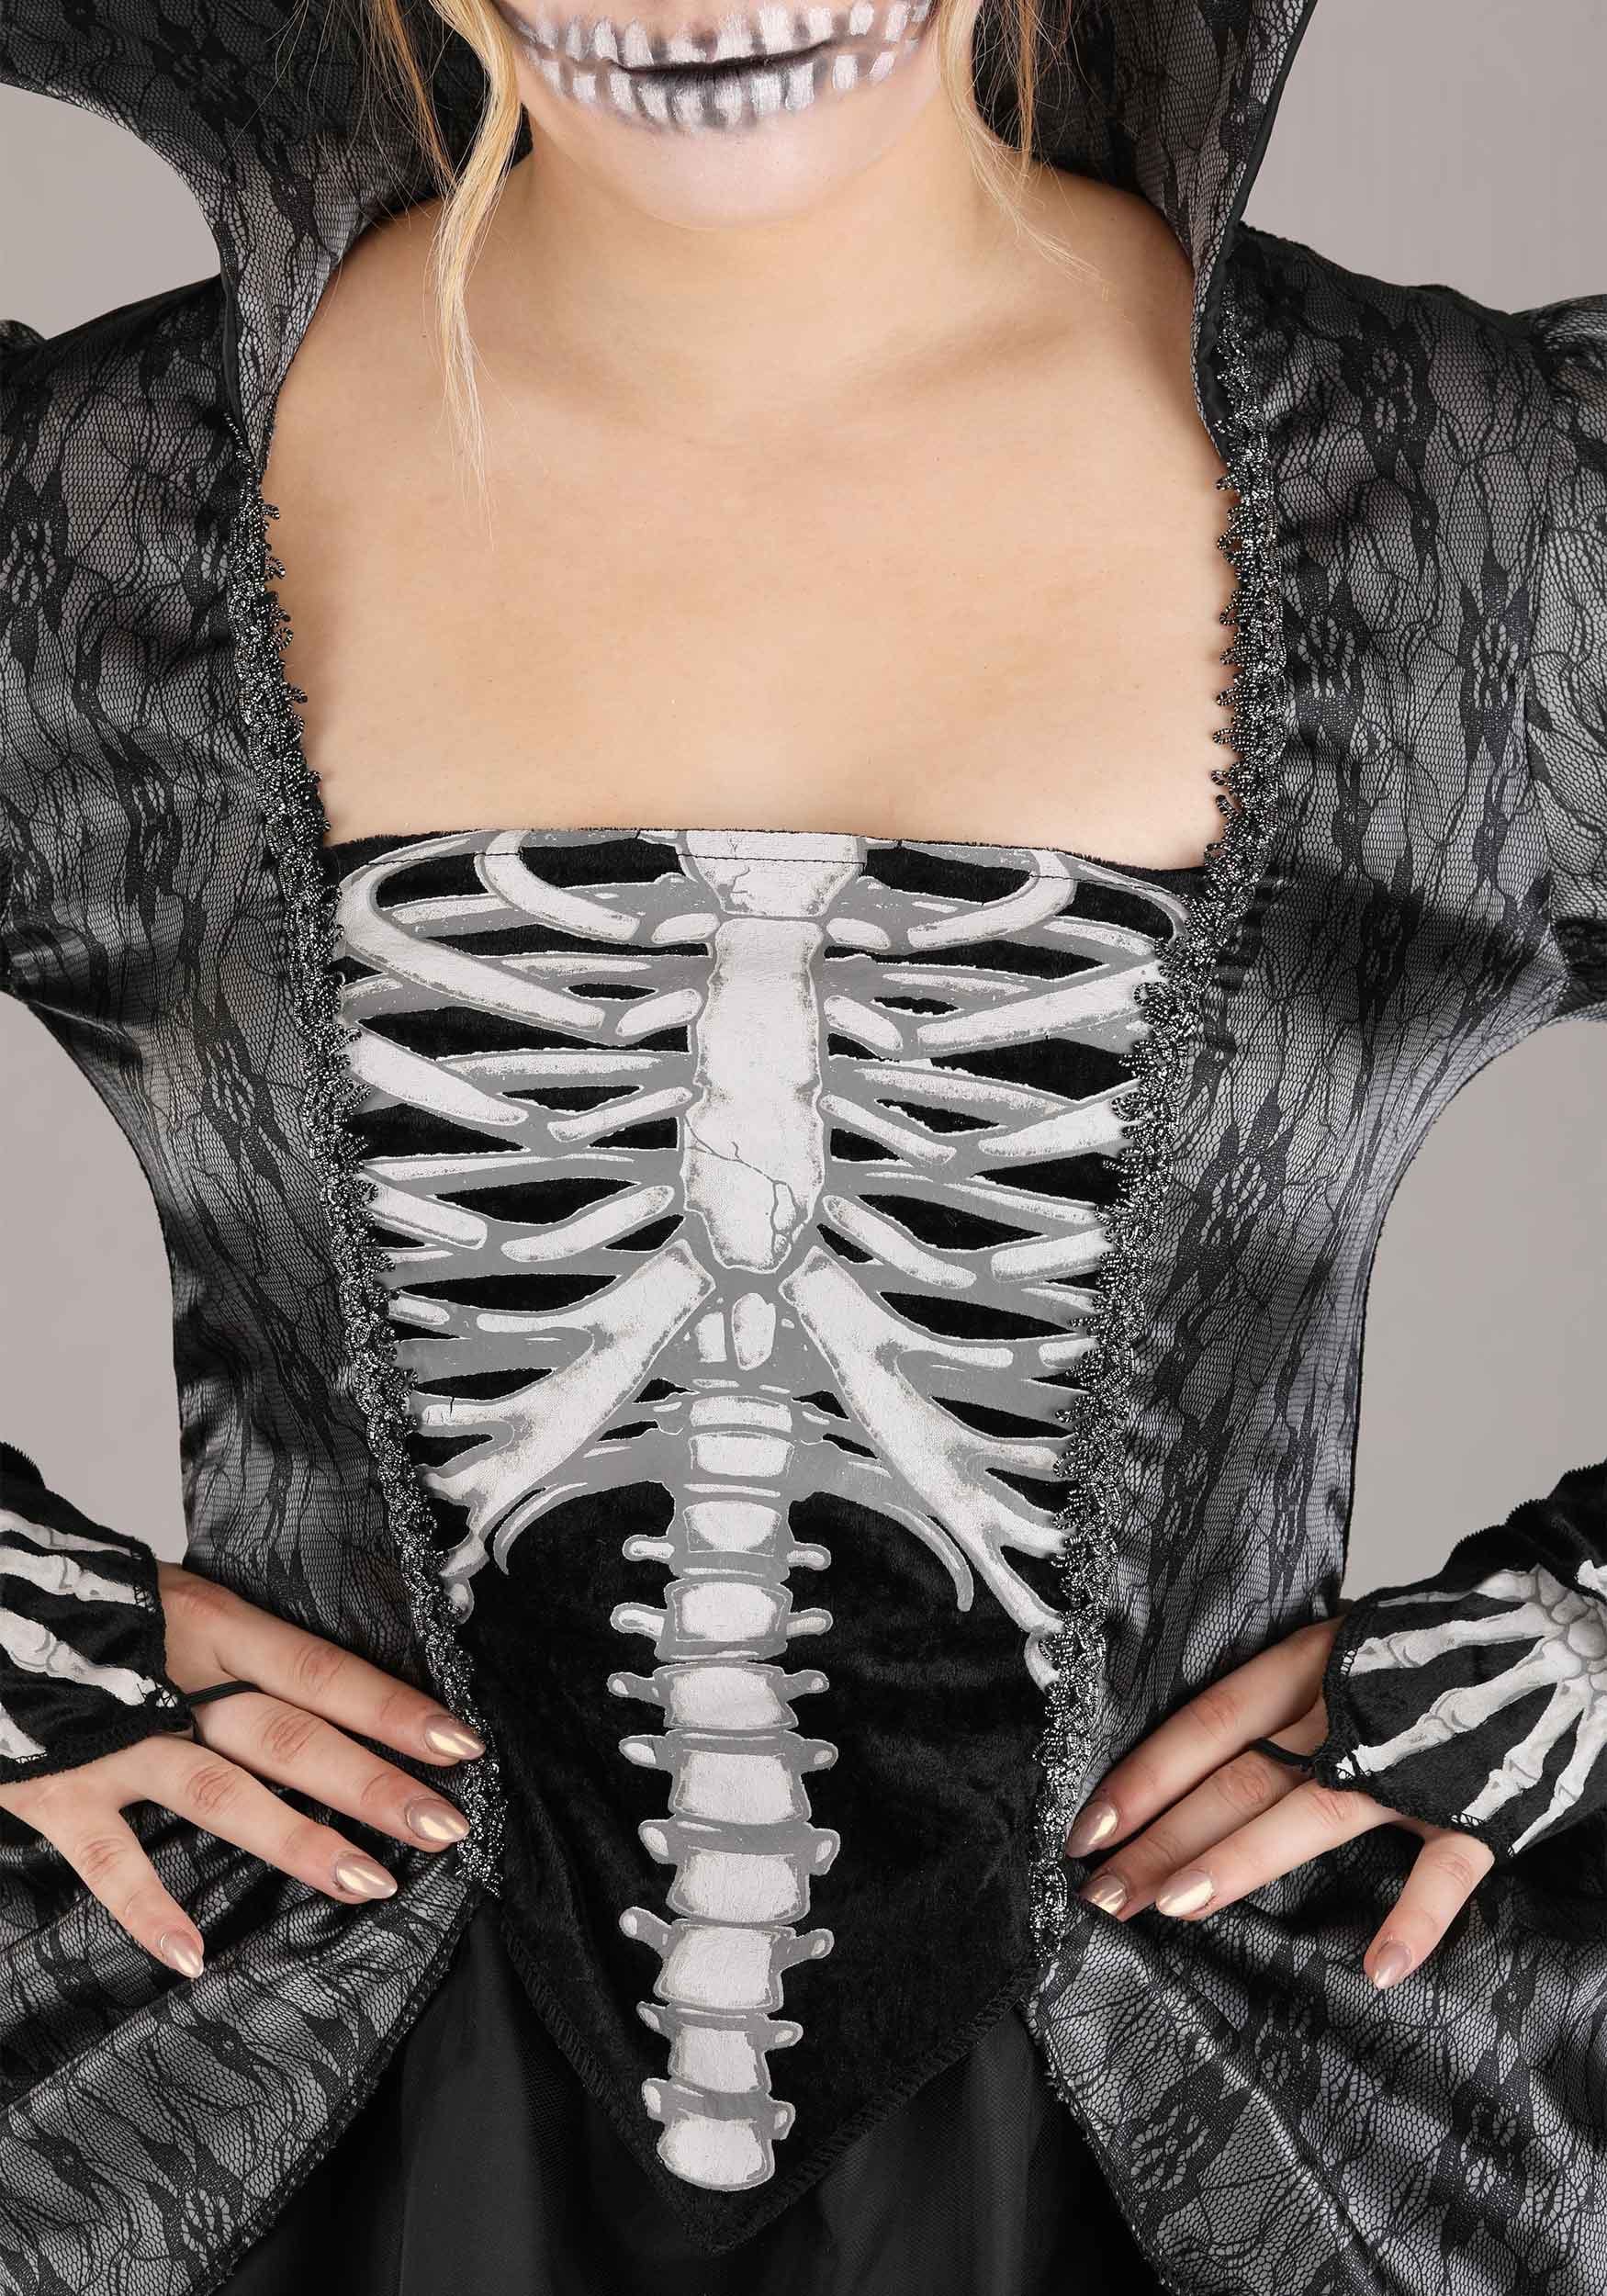 Women's Skeleton Queen Halloween Costume